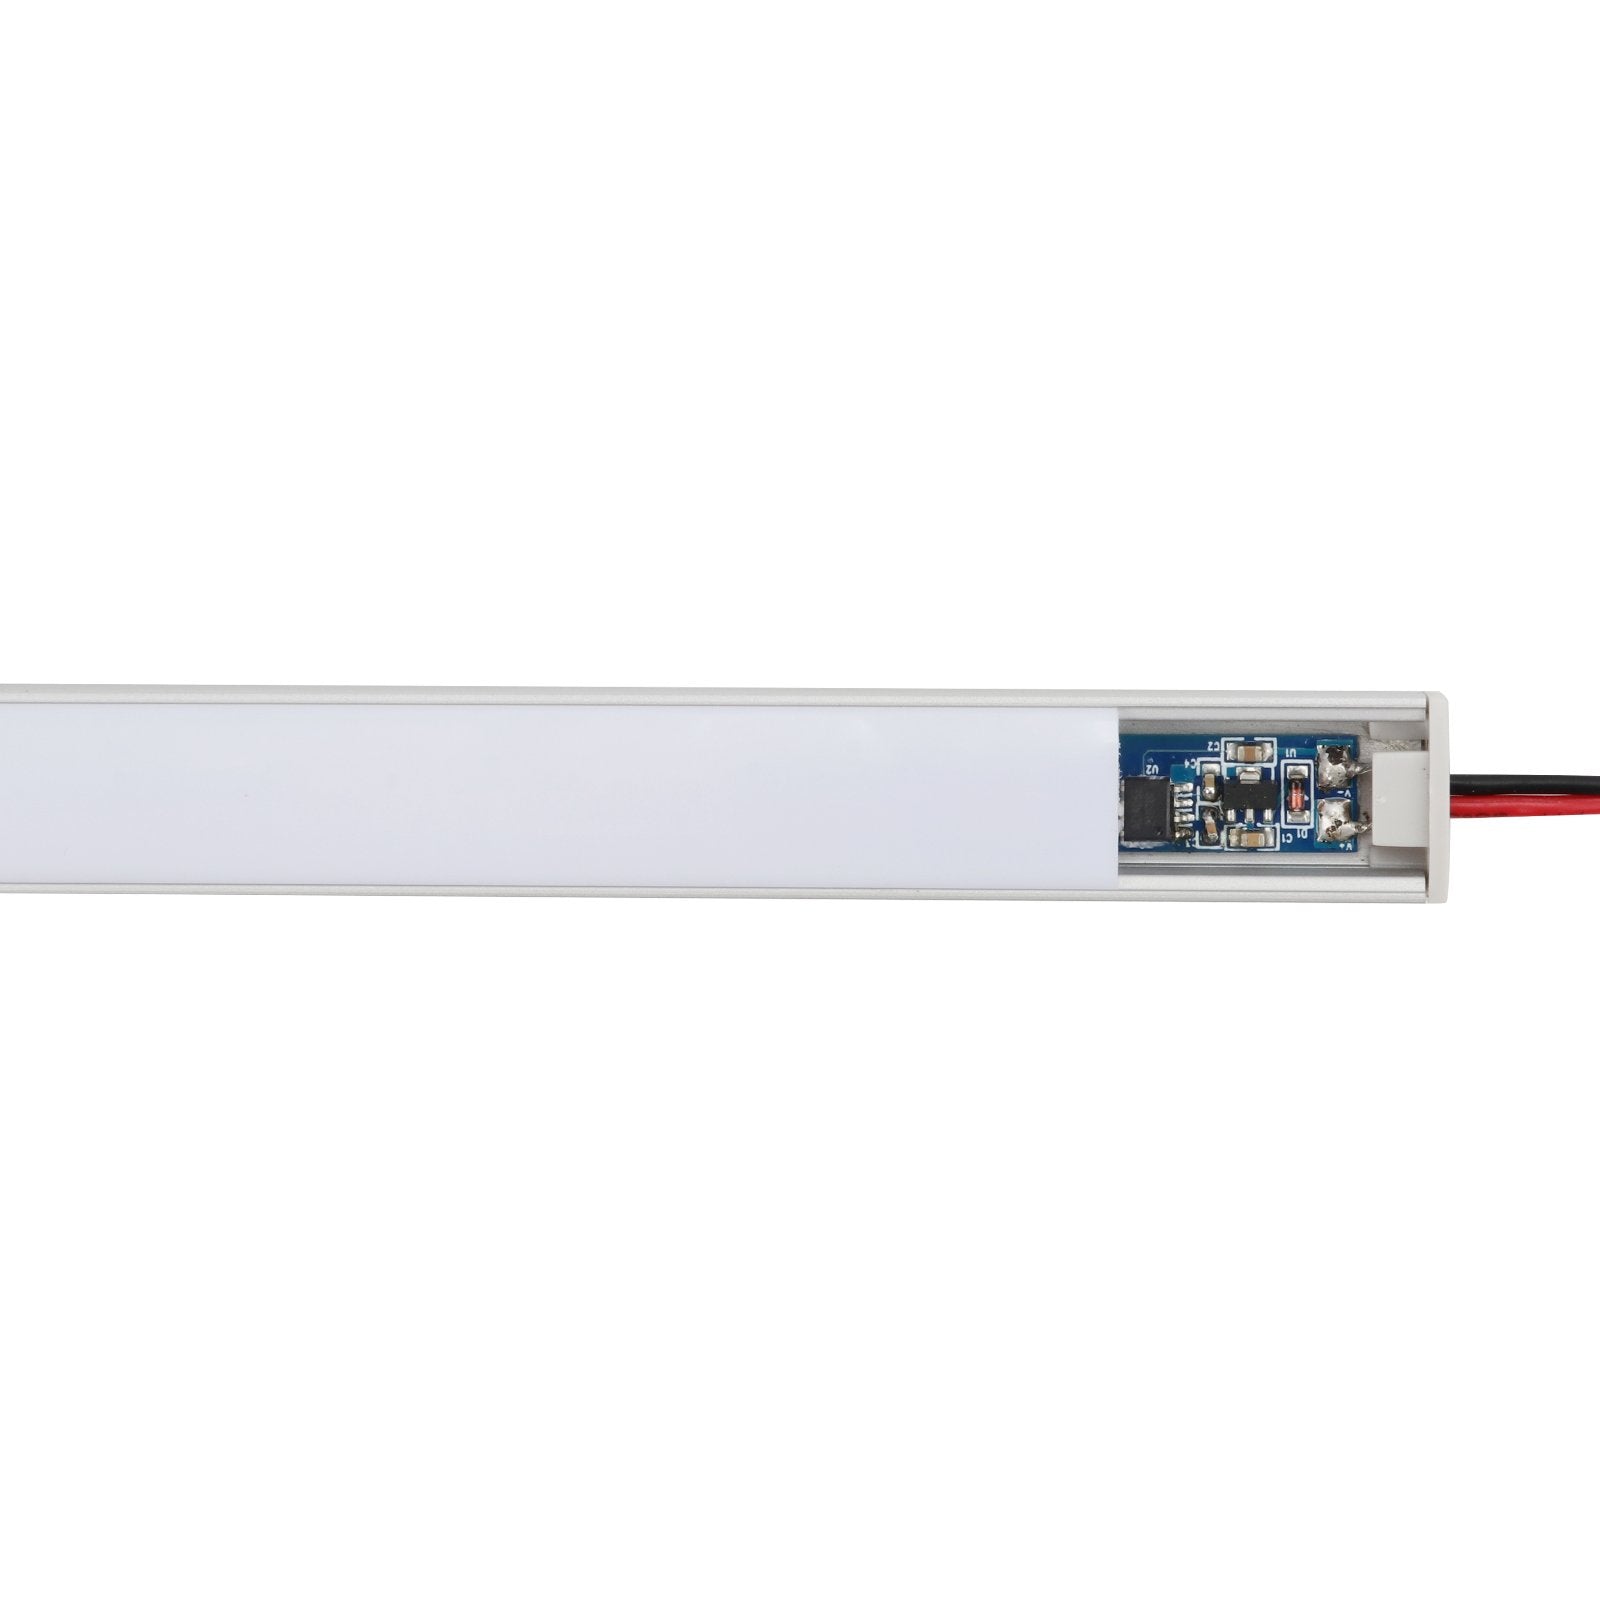 Interruttore LED Dimmer Touch Da Incasso CCT con Memoria 0V e Cambio della Temperatura Colore Tensione di Ingresso 12V-24V DC Tensione di Uscita 12V-24V DC Altezza della Molla 20mm